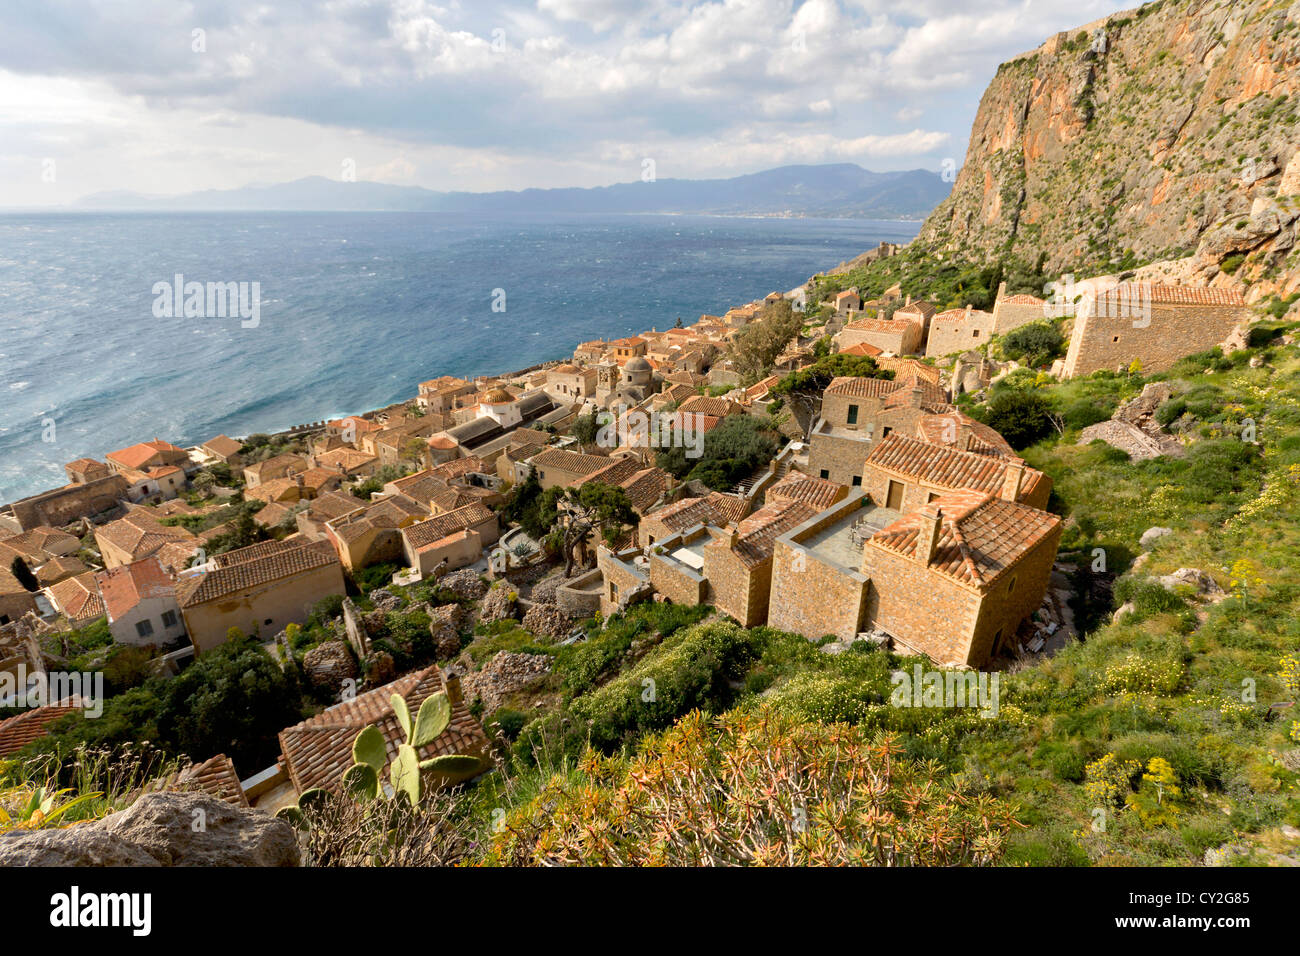 Traditionelle befestigte Dorf von Monemvasia in Griechenland. Monemvasia liegt auf der Halbinsel Peloponnes im Süden Griechenlands Stockfoto